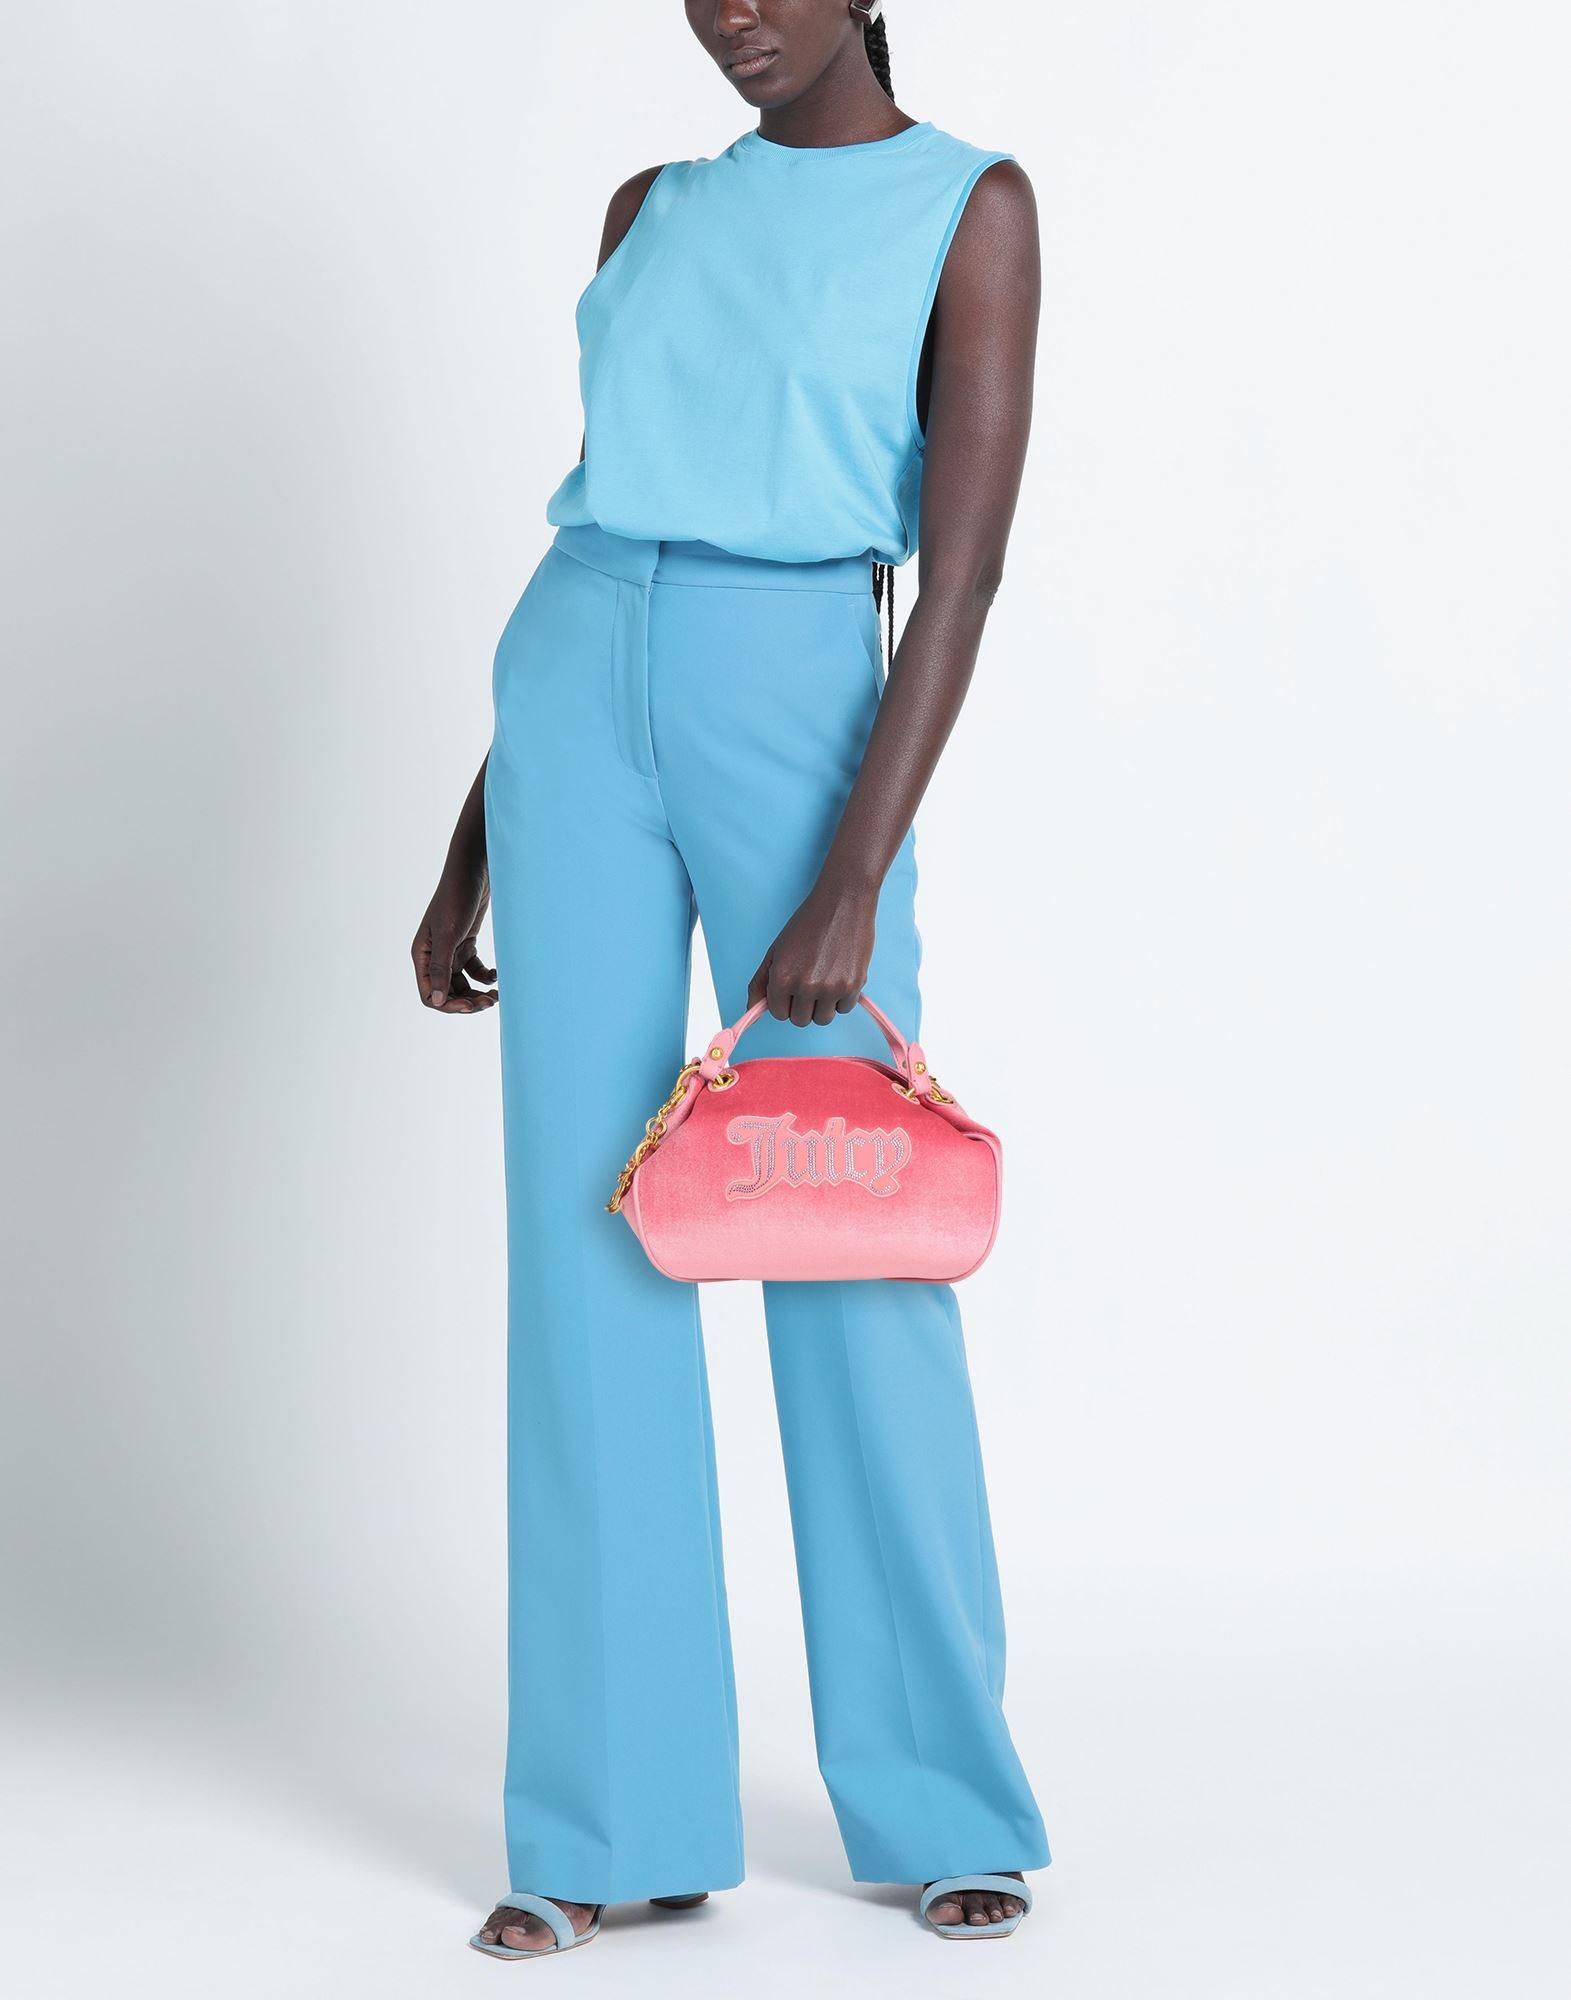 Juicy Couture Handbag Light Pink Double Top Handle Zip Tote Purse